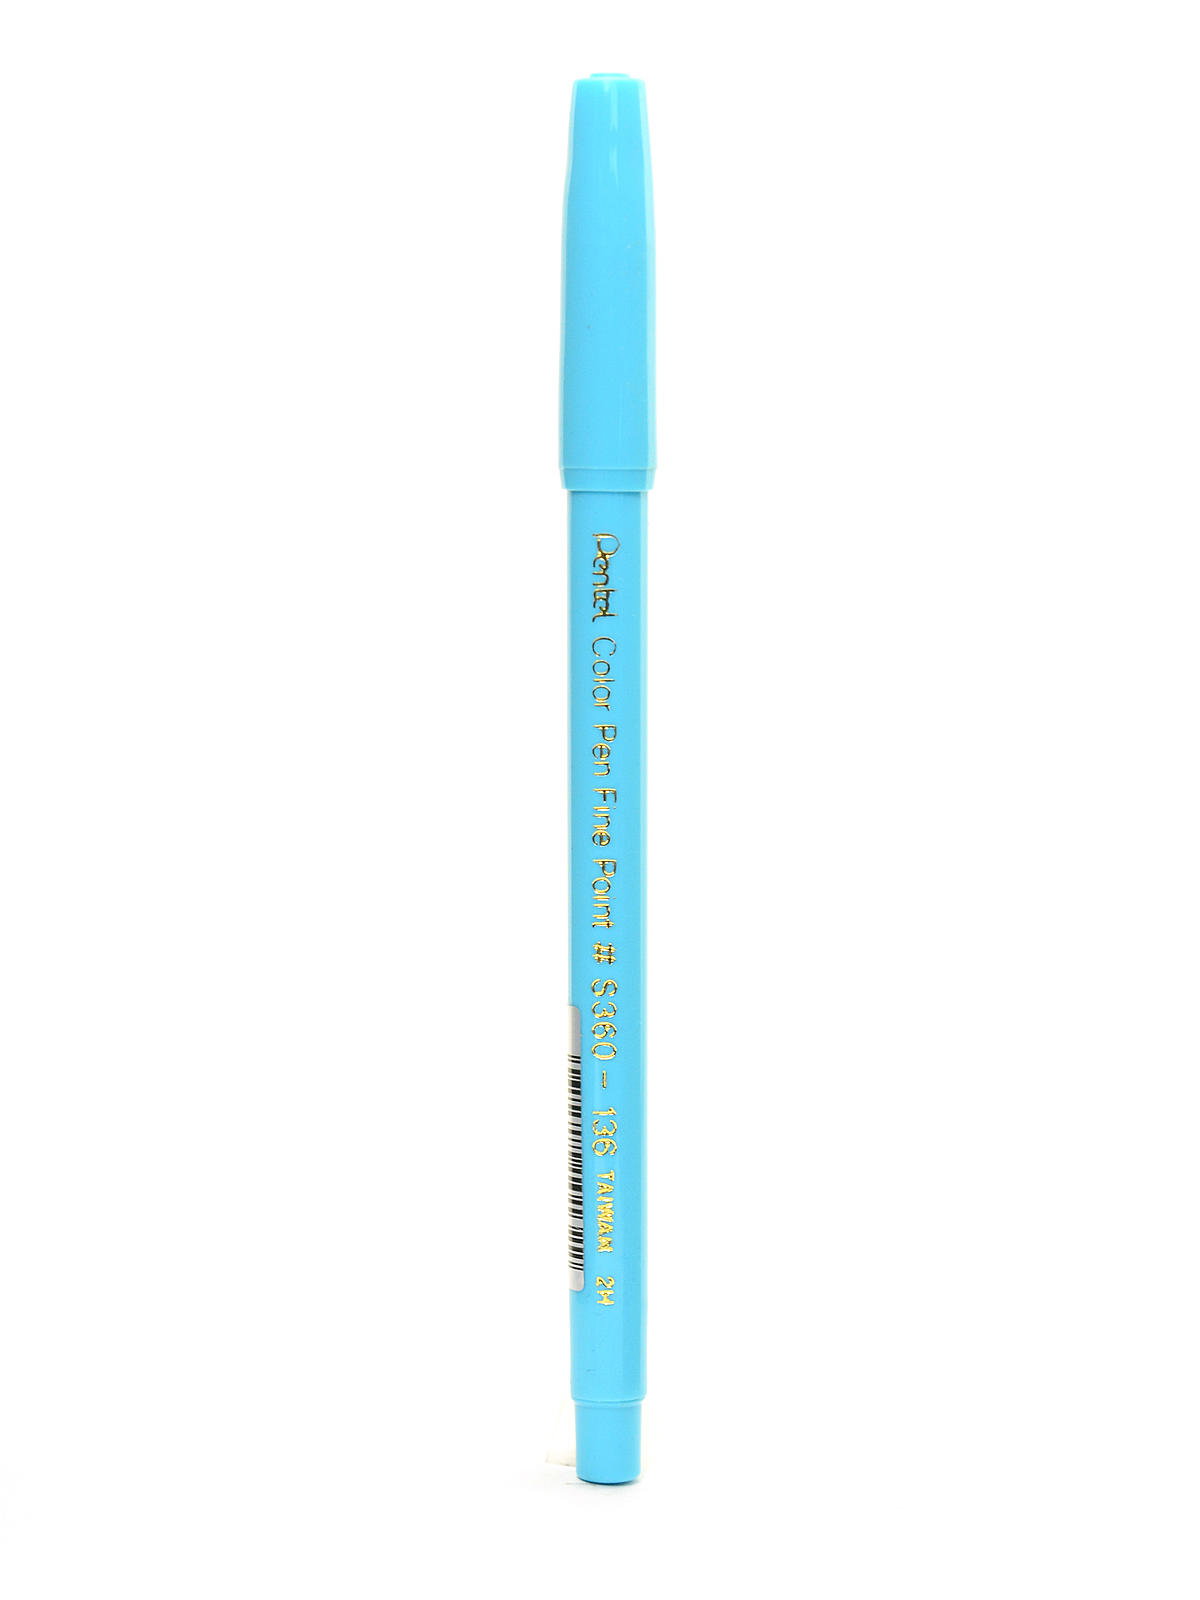 Pentel S360 Color Pen Sets - Set of 36